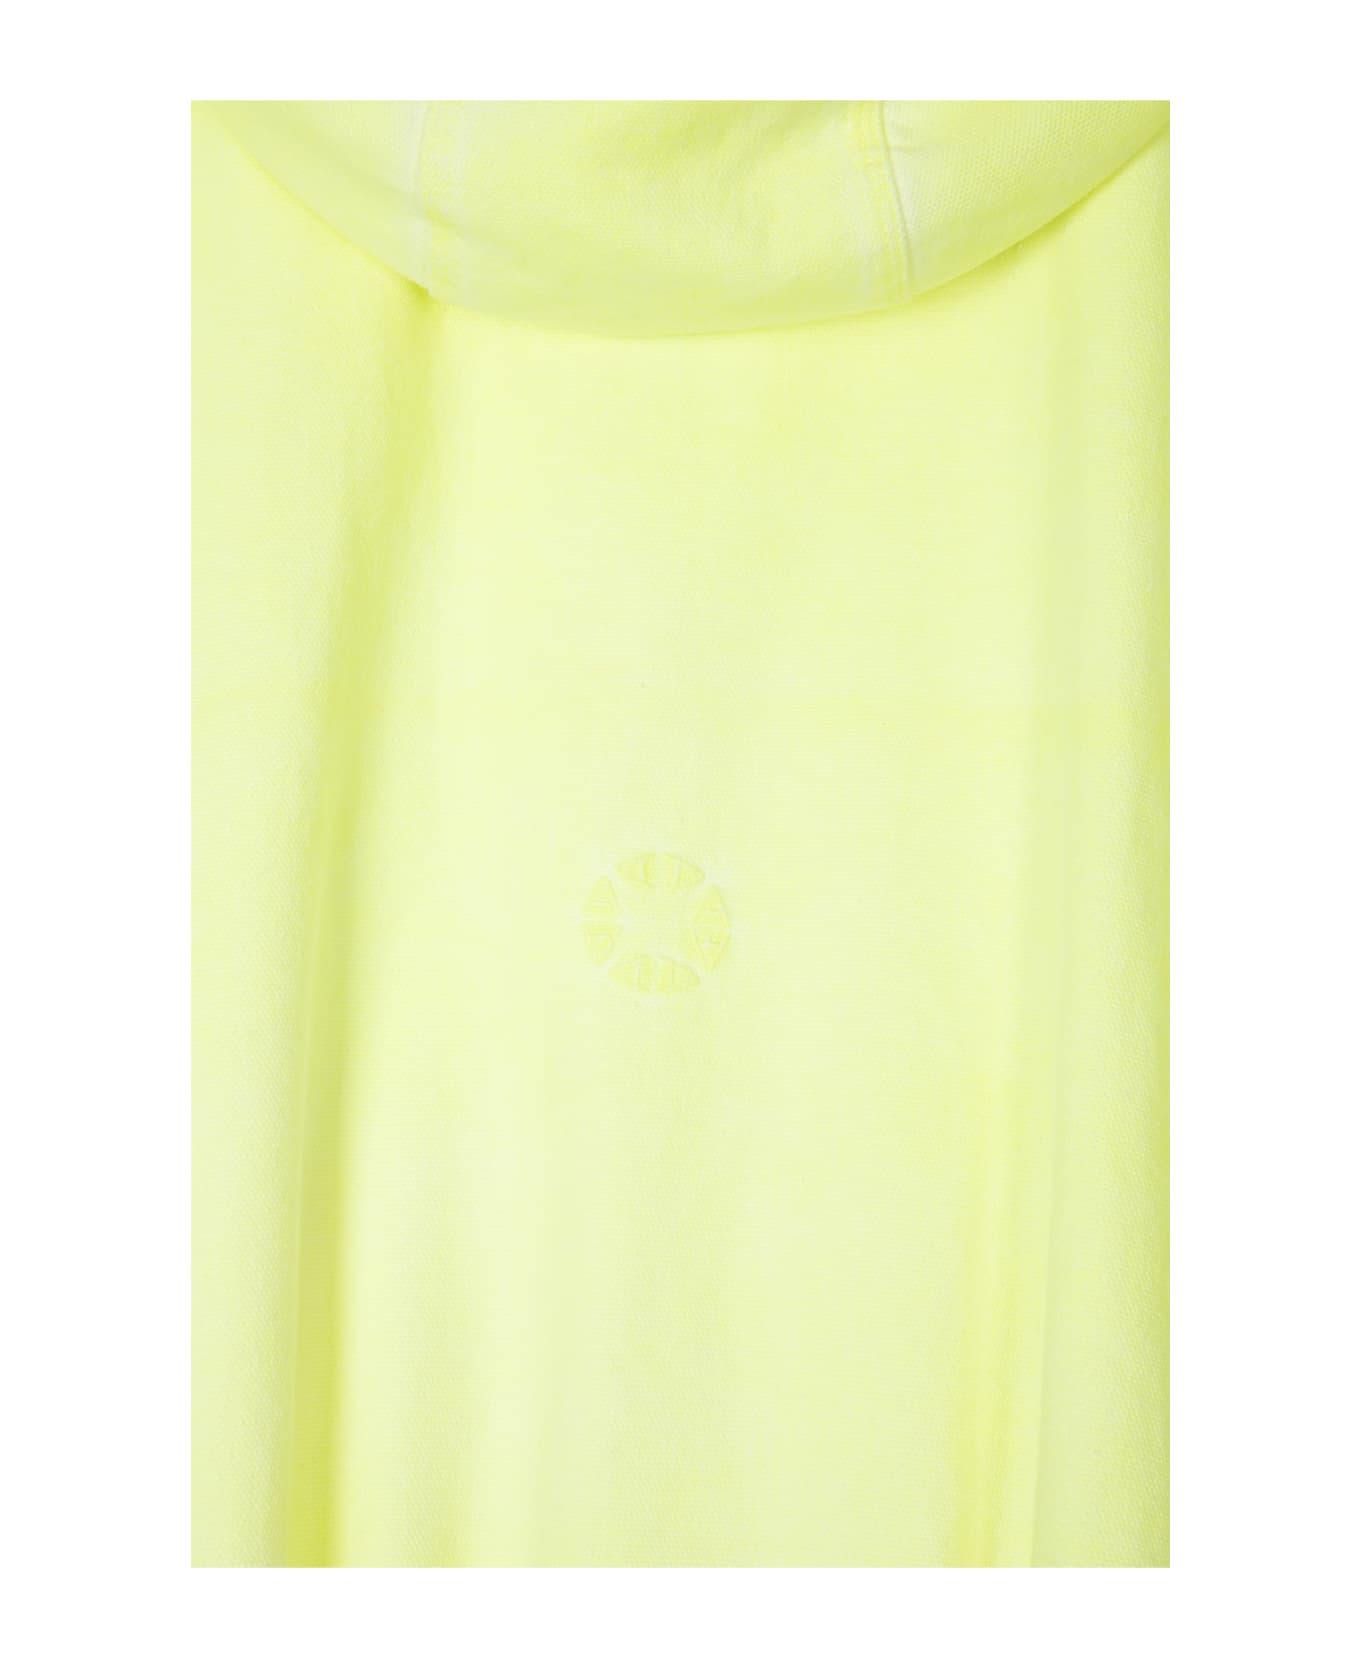 1017 ALYX 9SM Sleeveless Skate Jacket Neon Yellow Canvas Hooded Vest - Sleeveless Skate Jacket - Giallo ジャケット